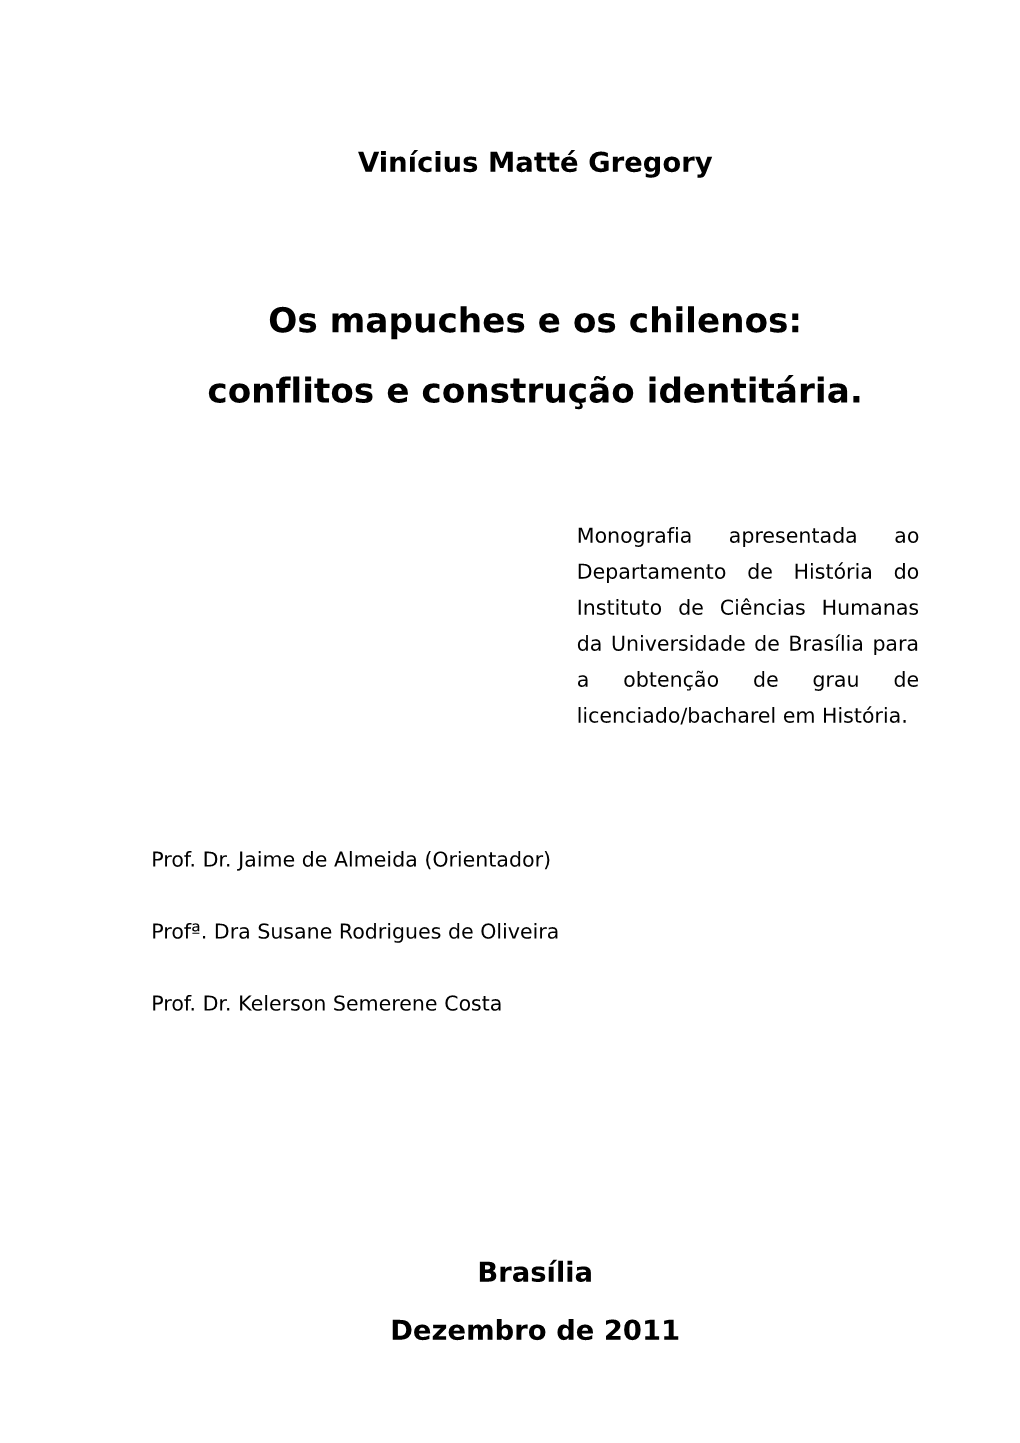 Os Mapuches E Os Chilenos: Conflitos E Construção Identitária